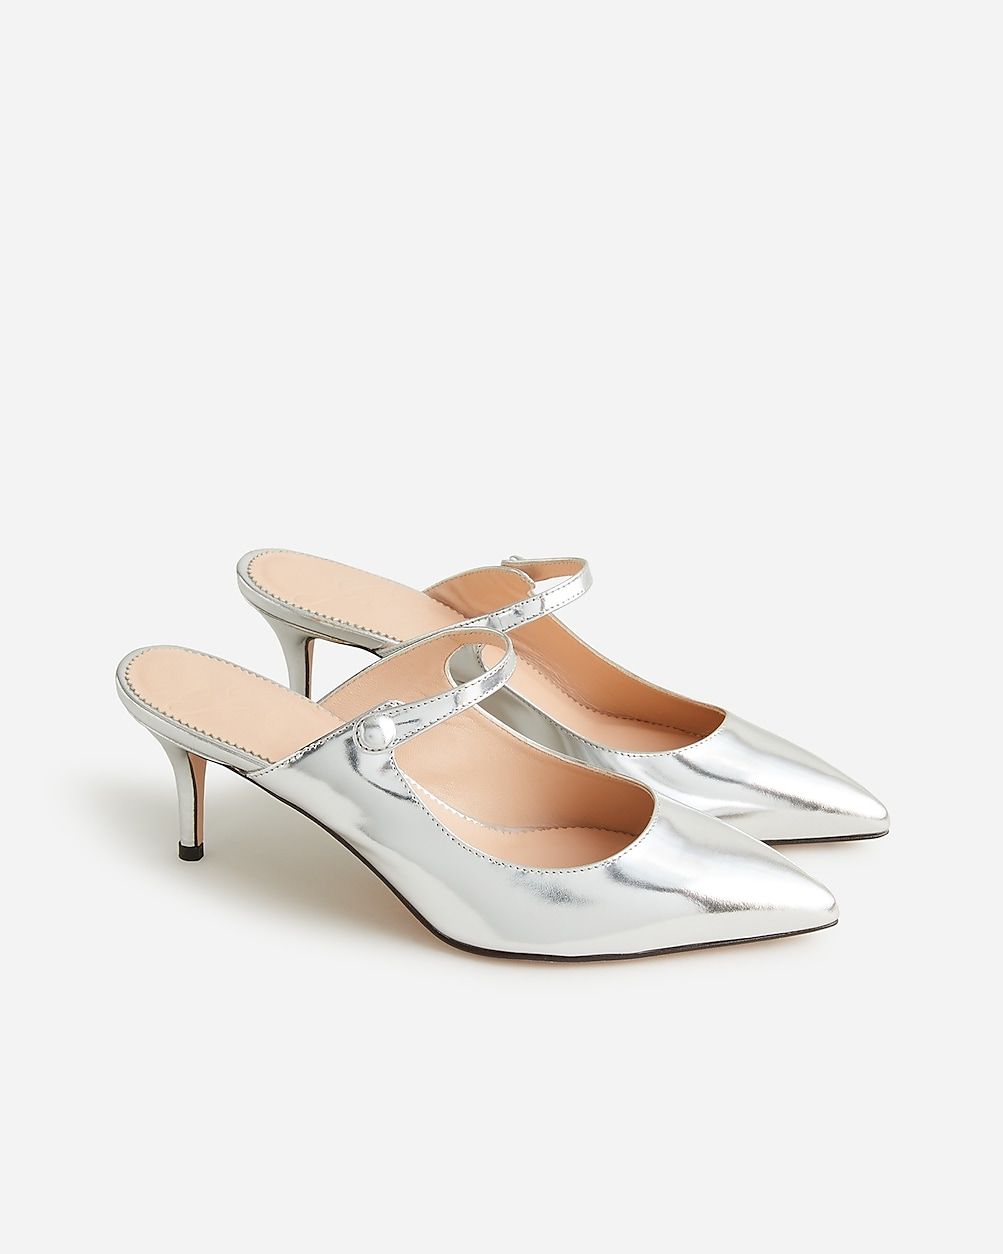 Colette mule heels in Italian specchio leather | J.Crew US